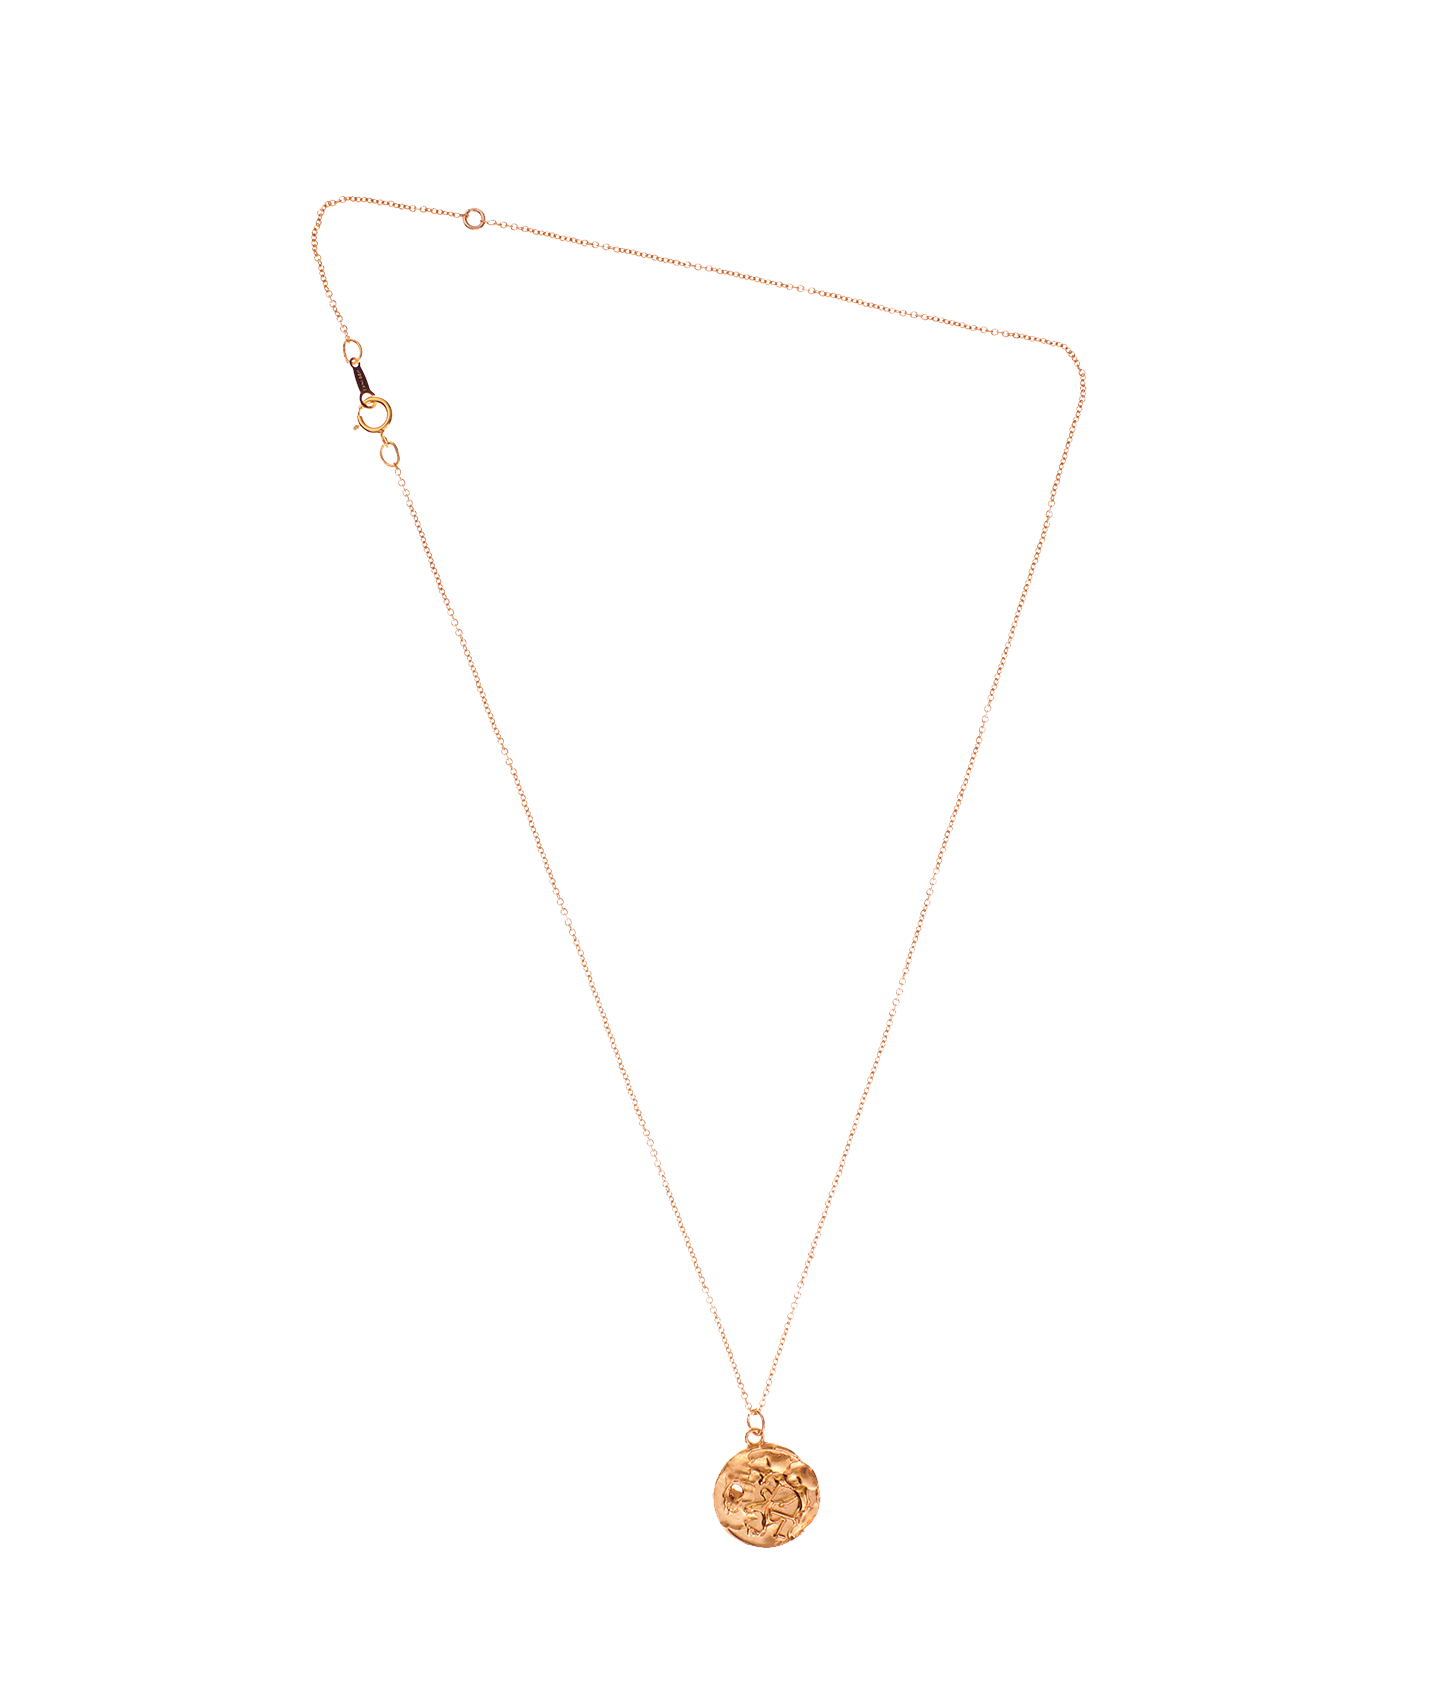 The Sagittarius Medallion